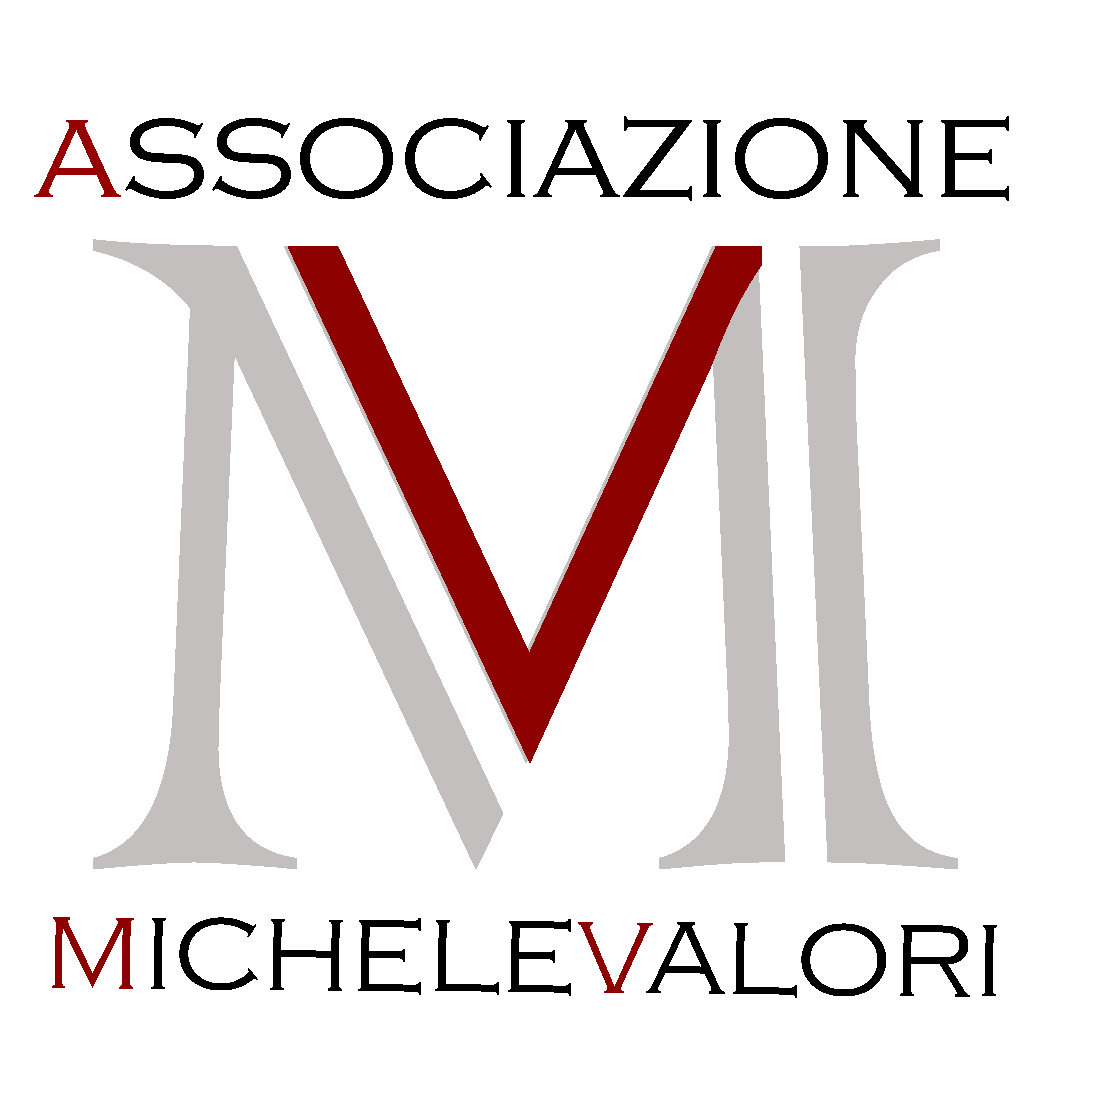 Associazione Michele Valori 